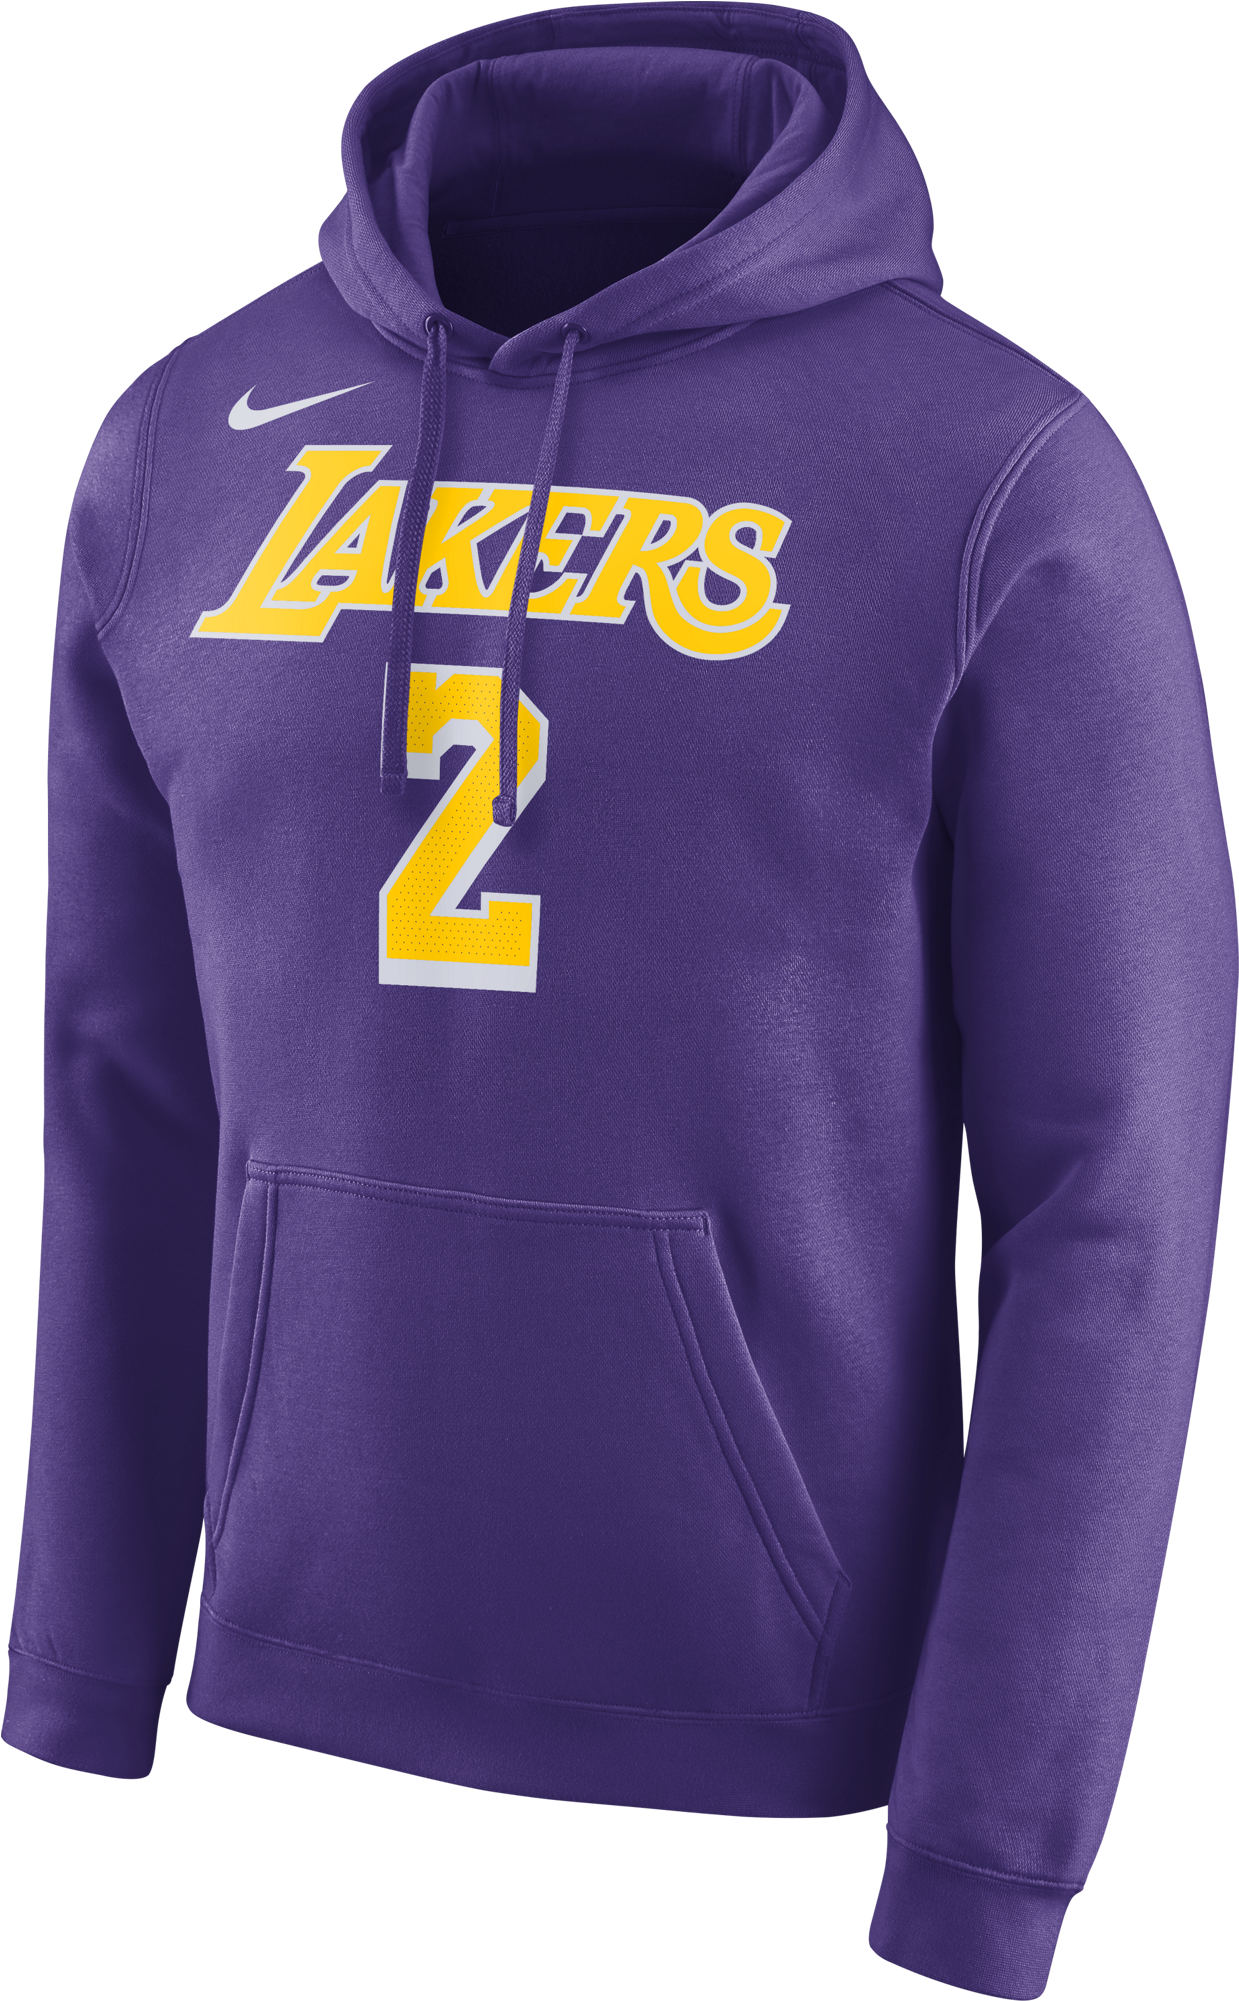 Los Angeles Lakers Number2 Hoodie PNG image